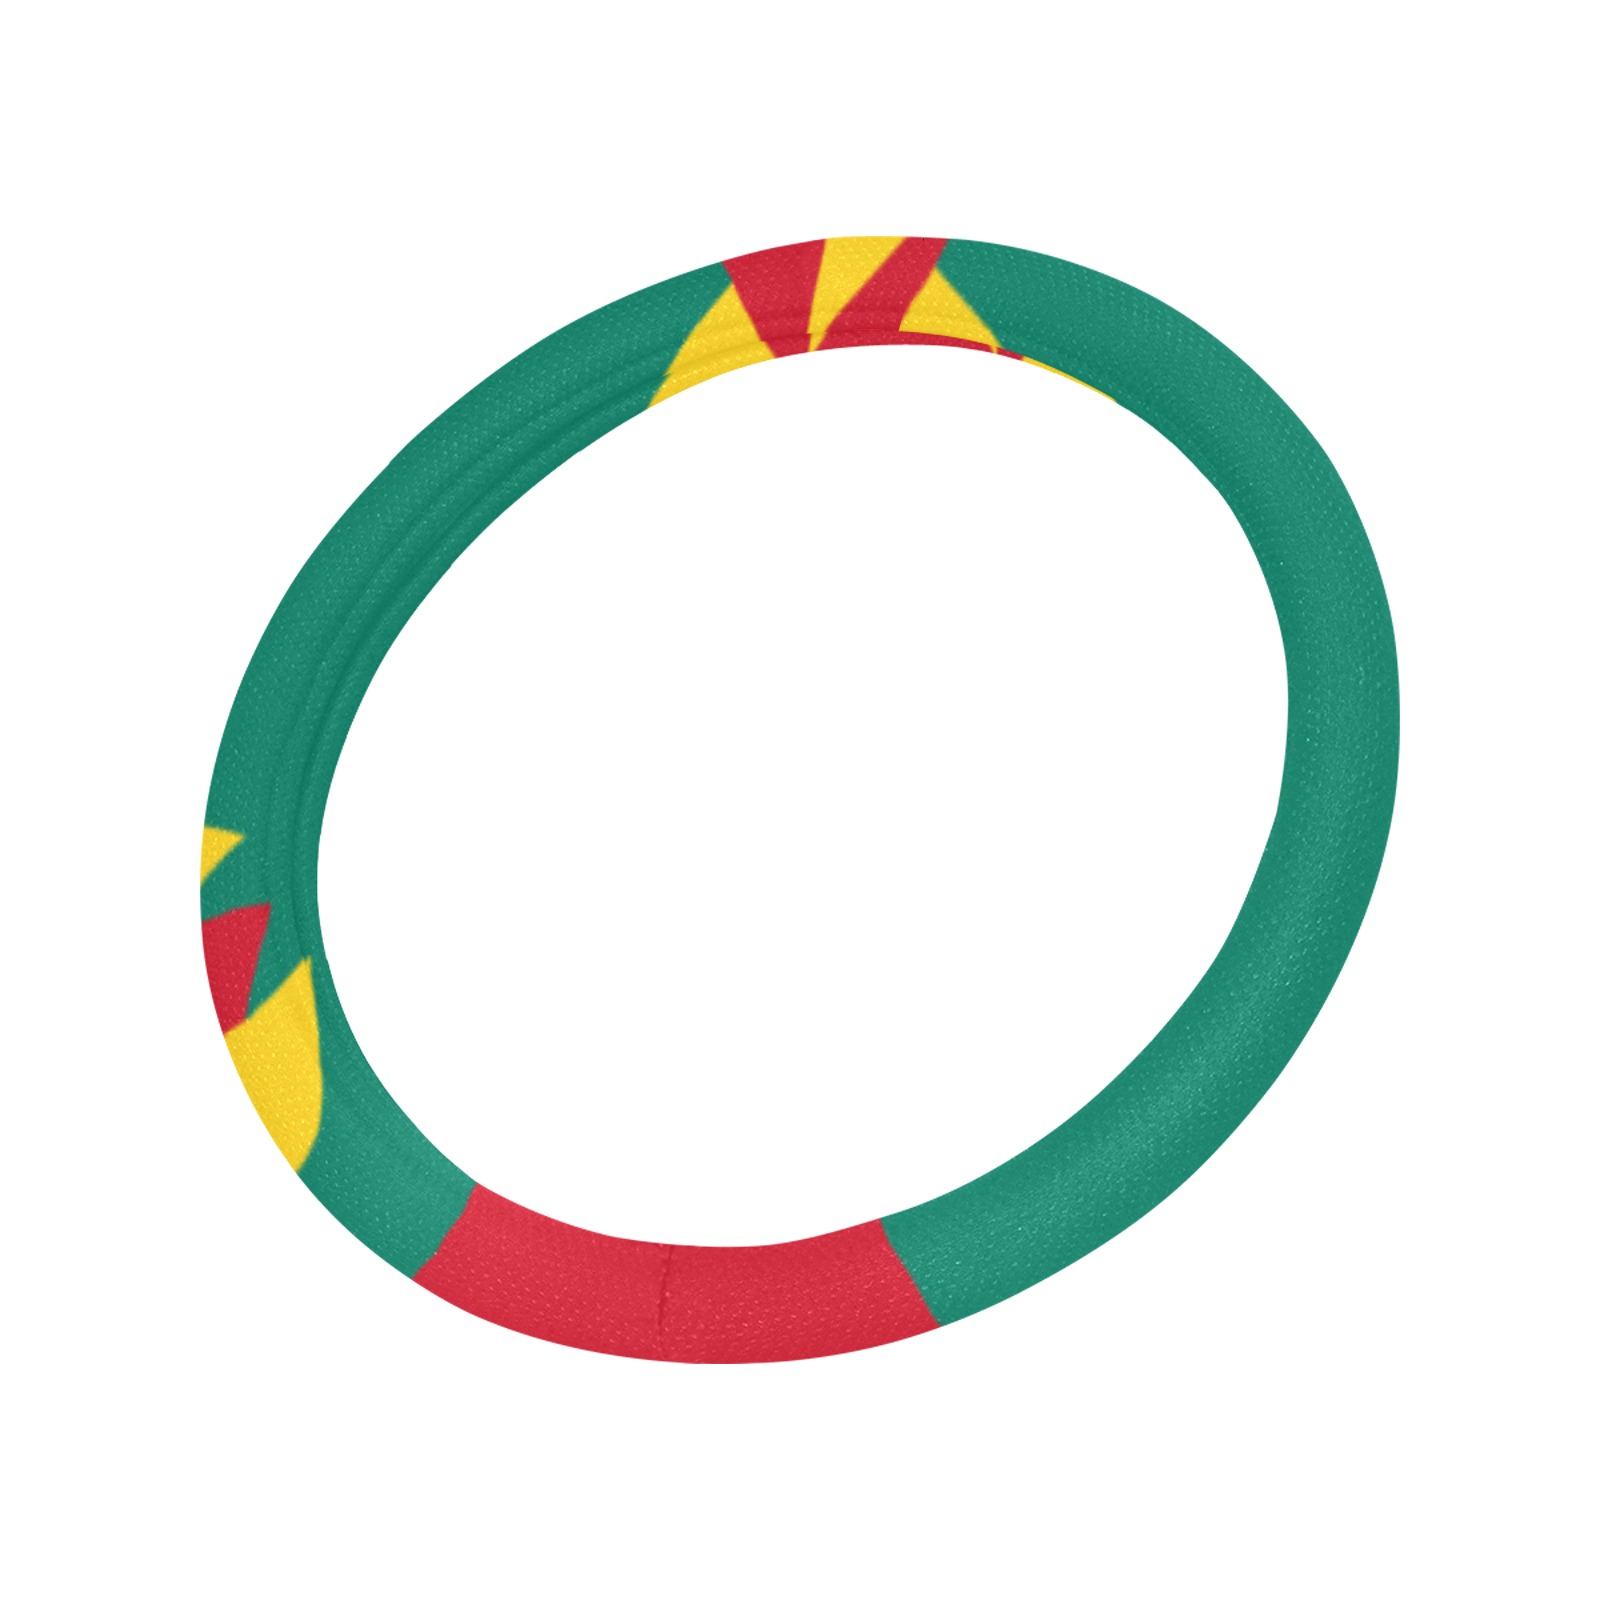 Grenada Flag Steering Wheel Cover with Anti-Slip Insert